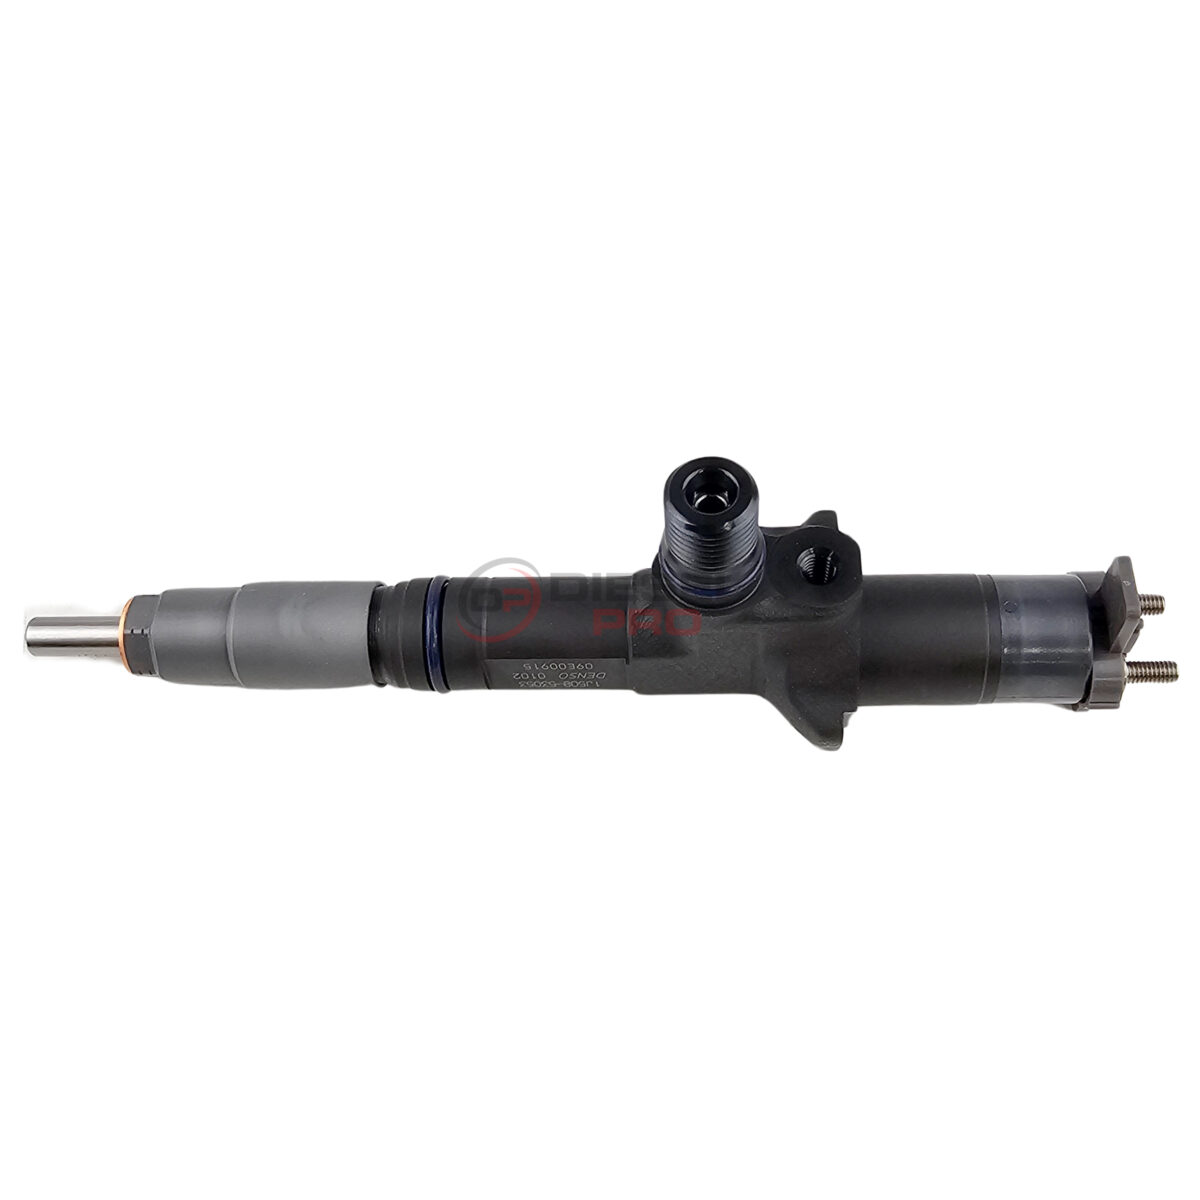 1J508-53070 | Kubota V3800 Tier 4 Fuel Injector (482-8434)